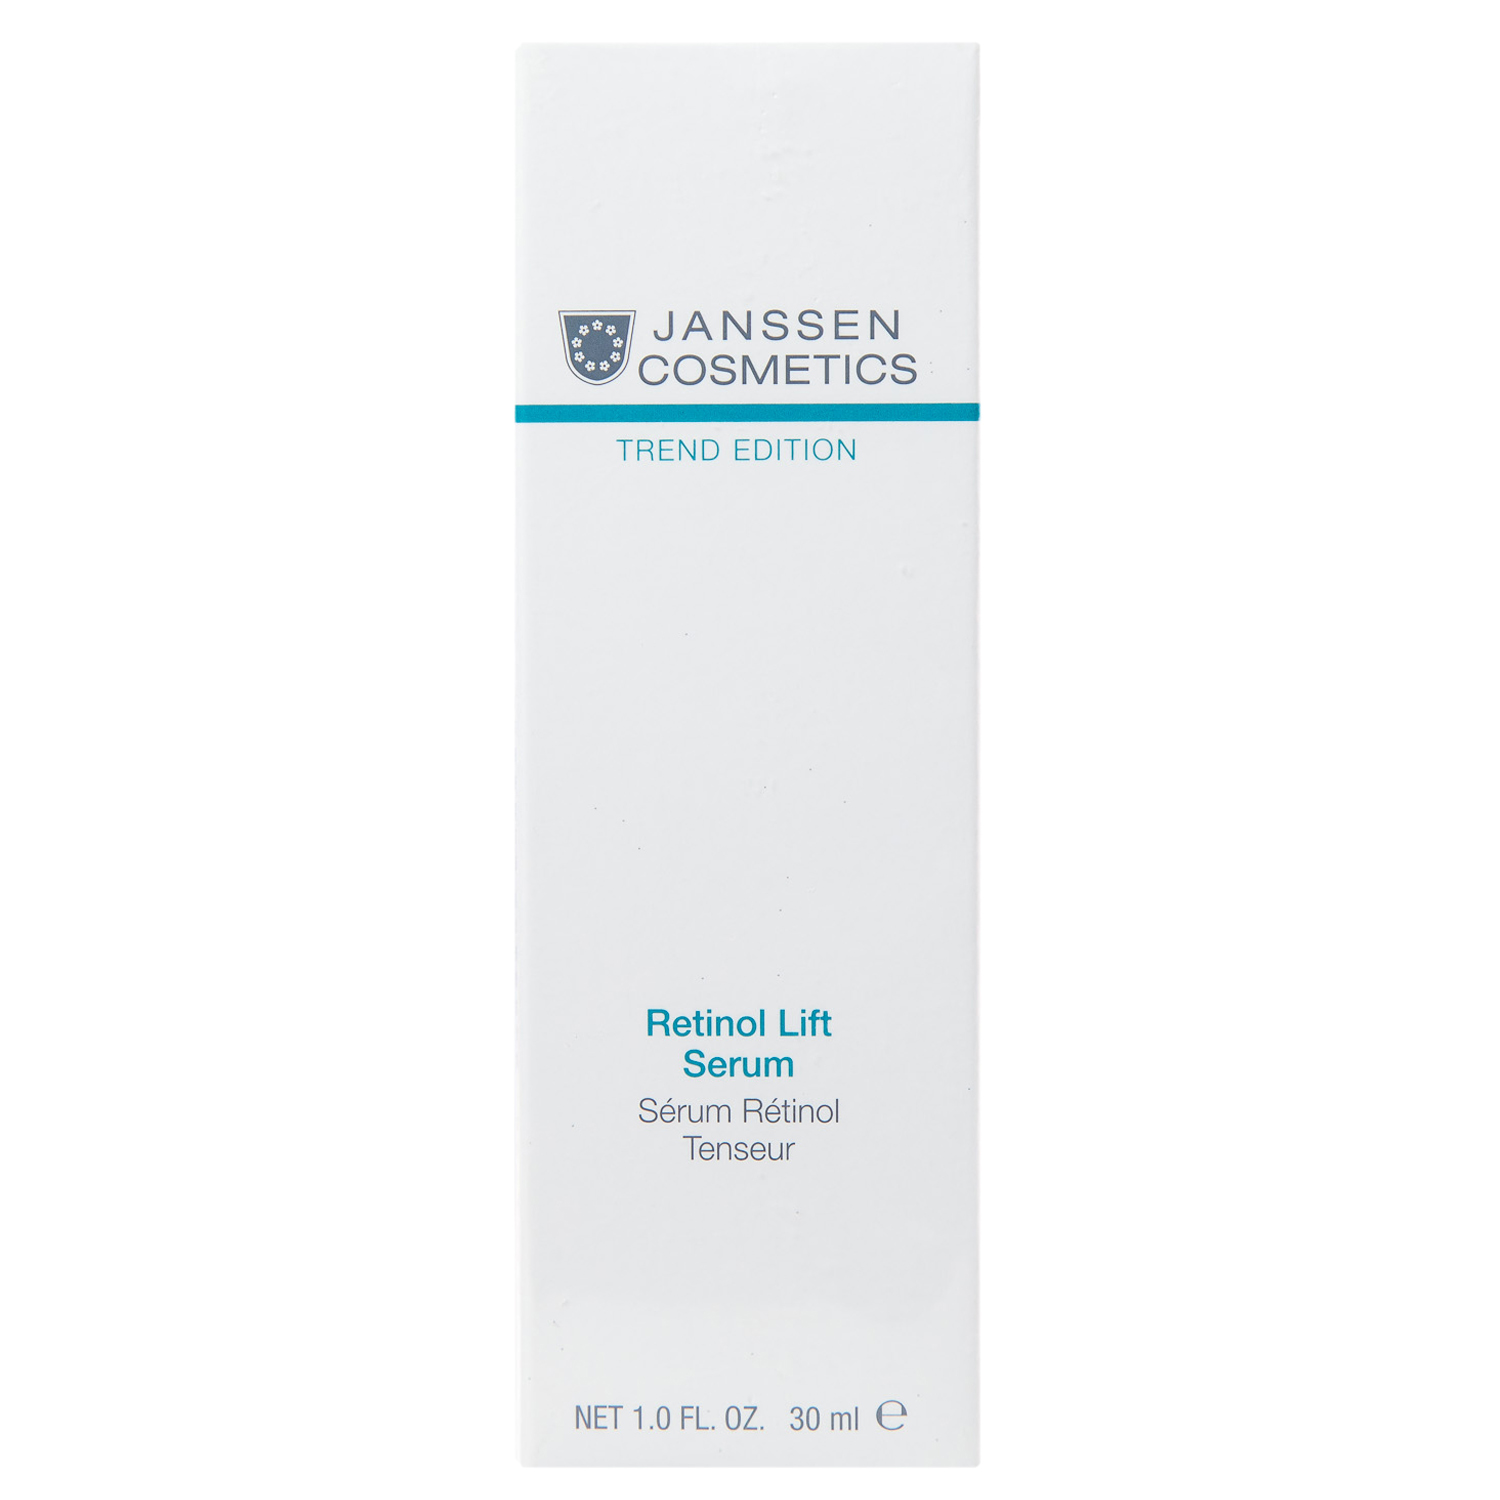 Janssen Cosmetics Лифтинг сыворотка с Ретинолом, 30 мл (Janssen Cosmetics, Trend Edition) janssen cosmetics лифтинг сыворотка с ретинолом 30 мл janssen cosmetics trend edition